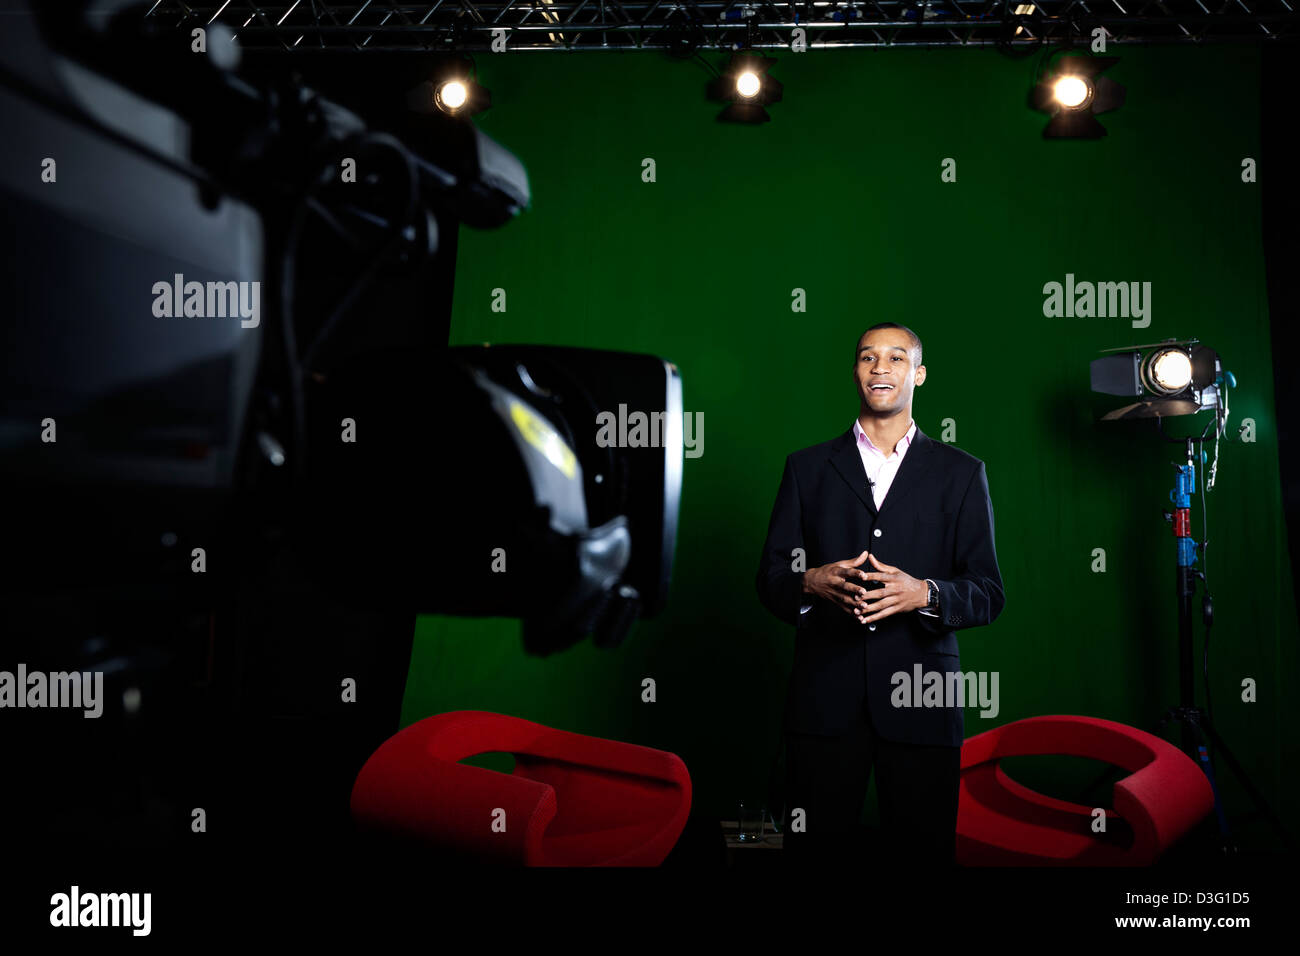 Présentateur de télévision dans un studio de télévision avec écran vert appareil photo de se concentrer dans l'avant-plan. Banque D'Images